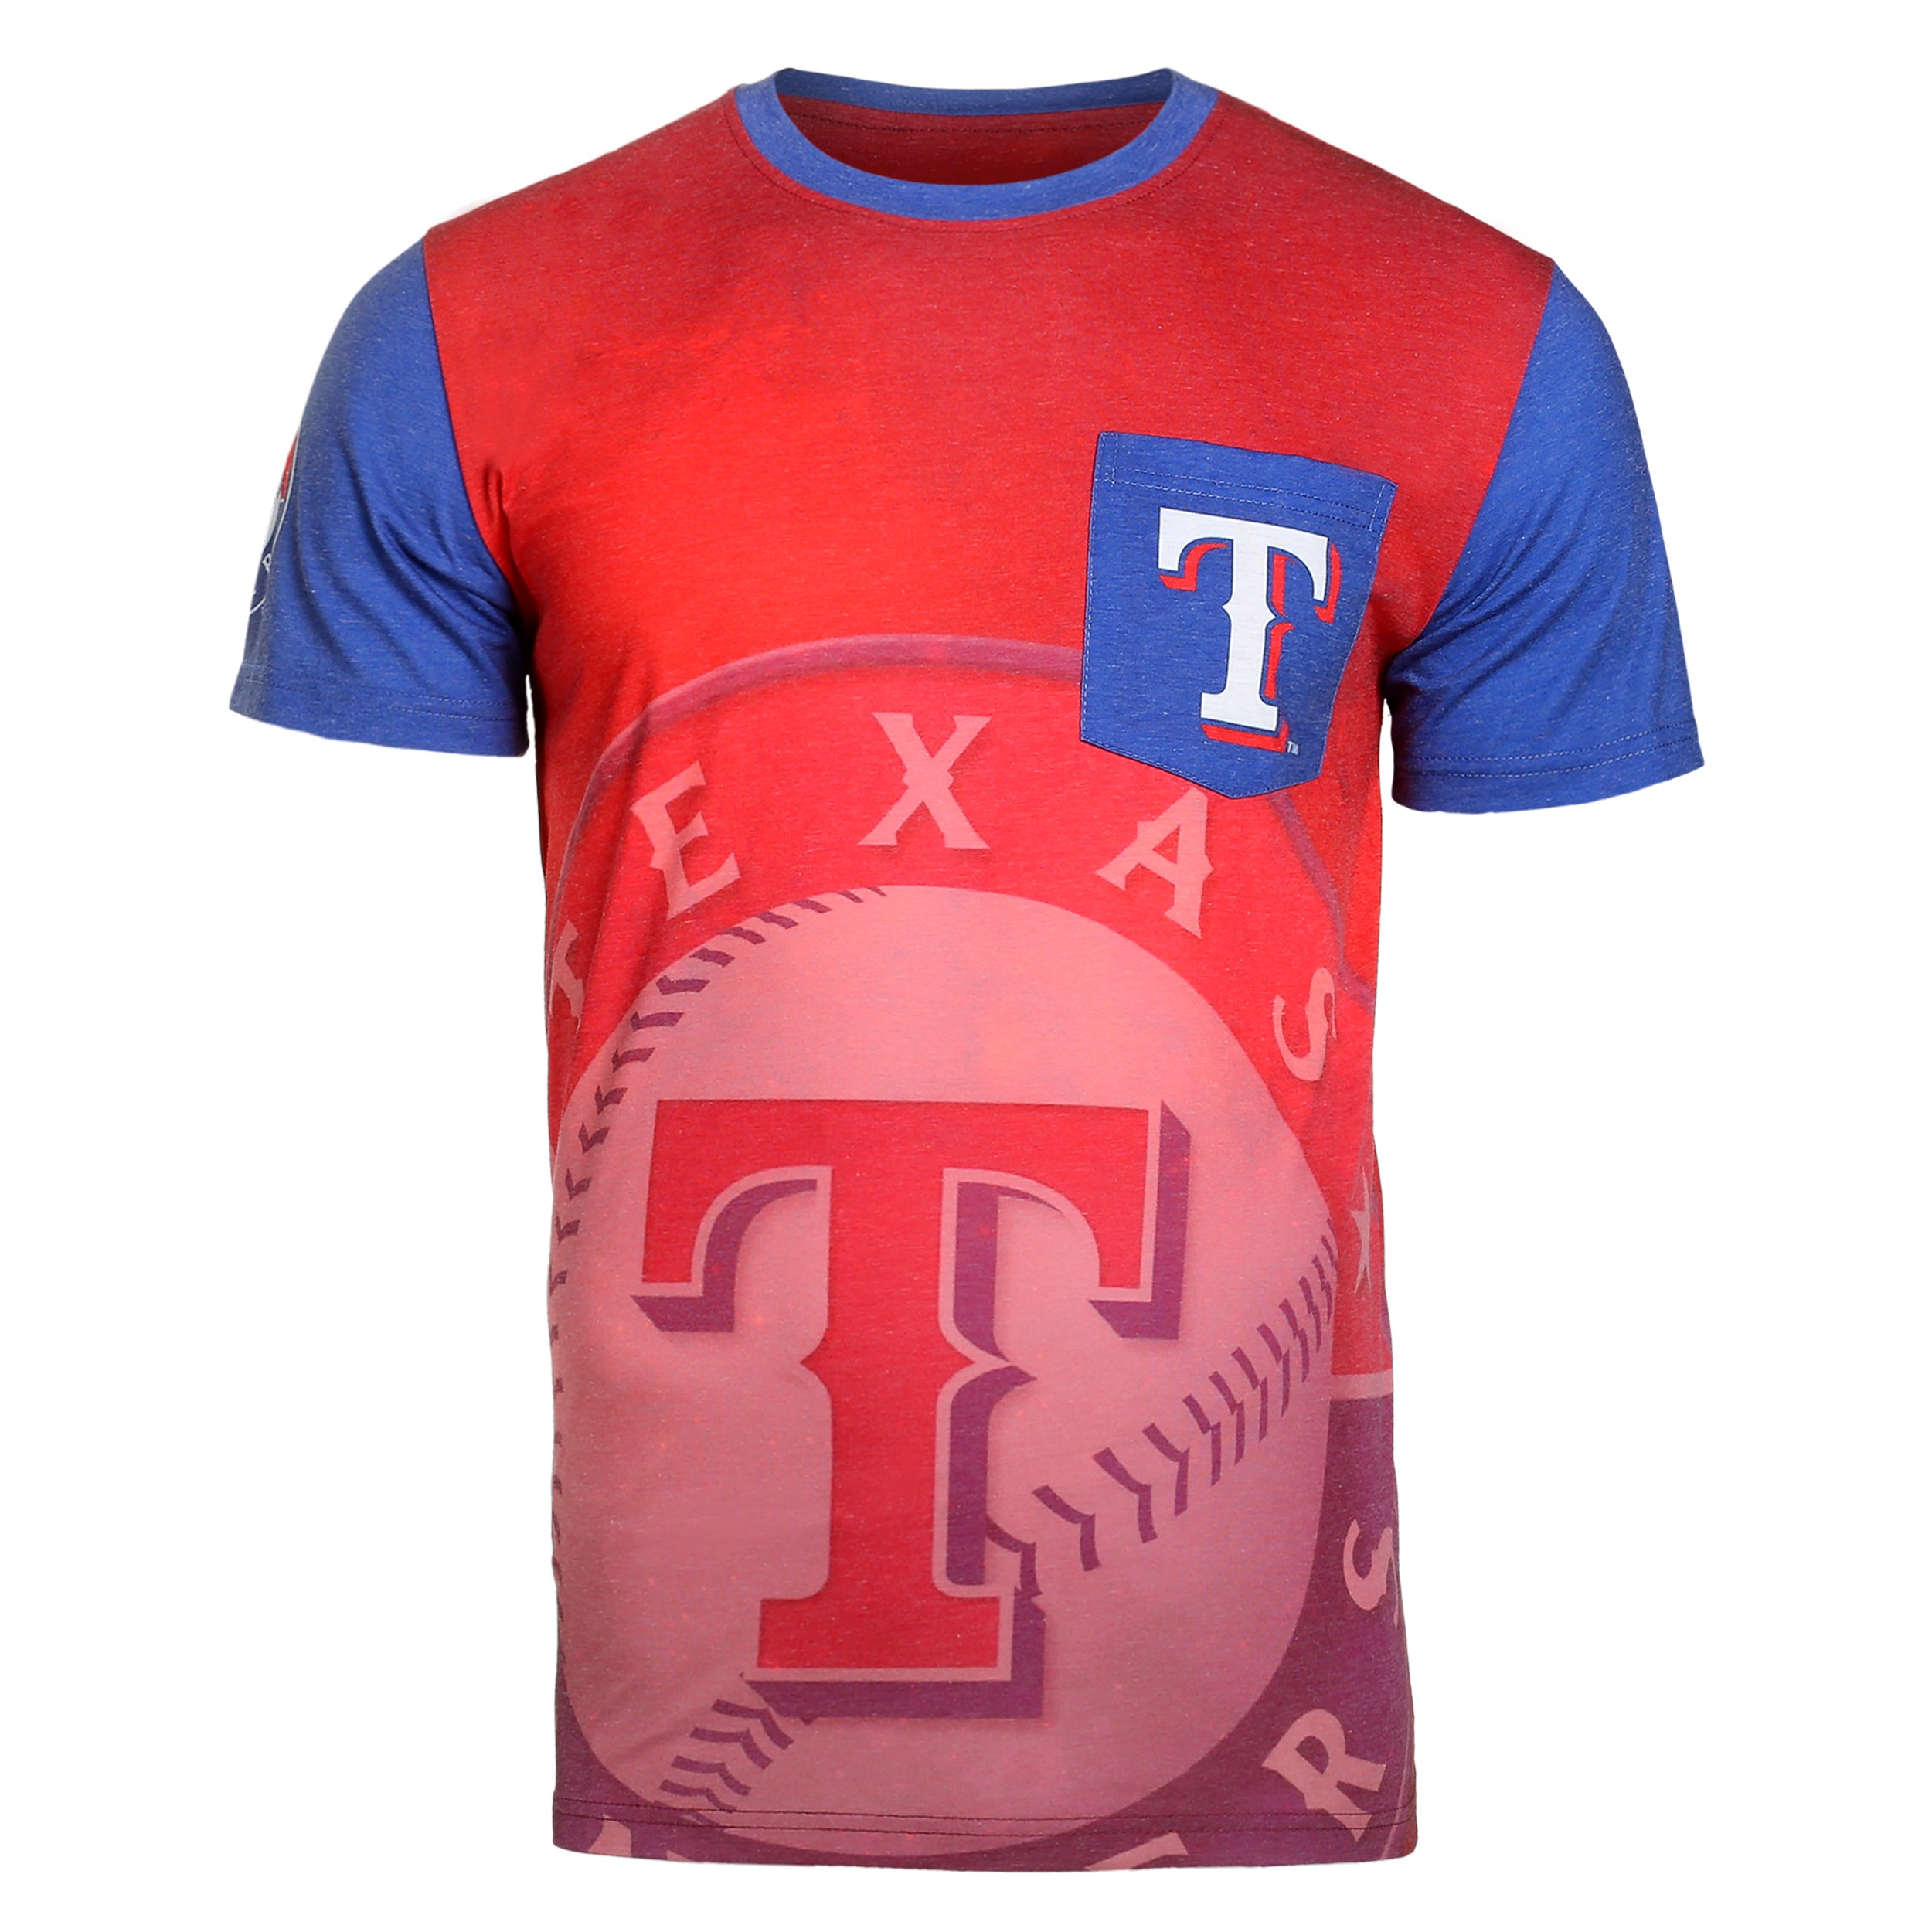 men's texas rangers shirt